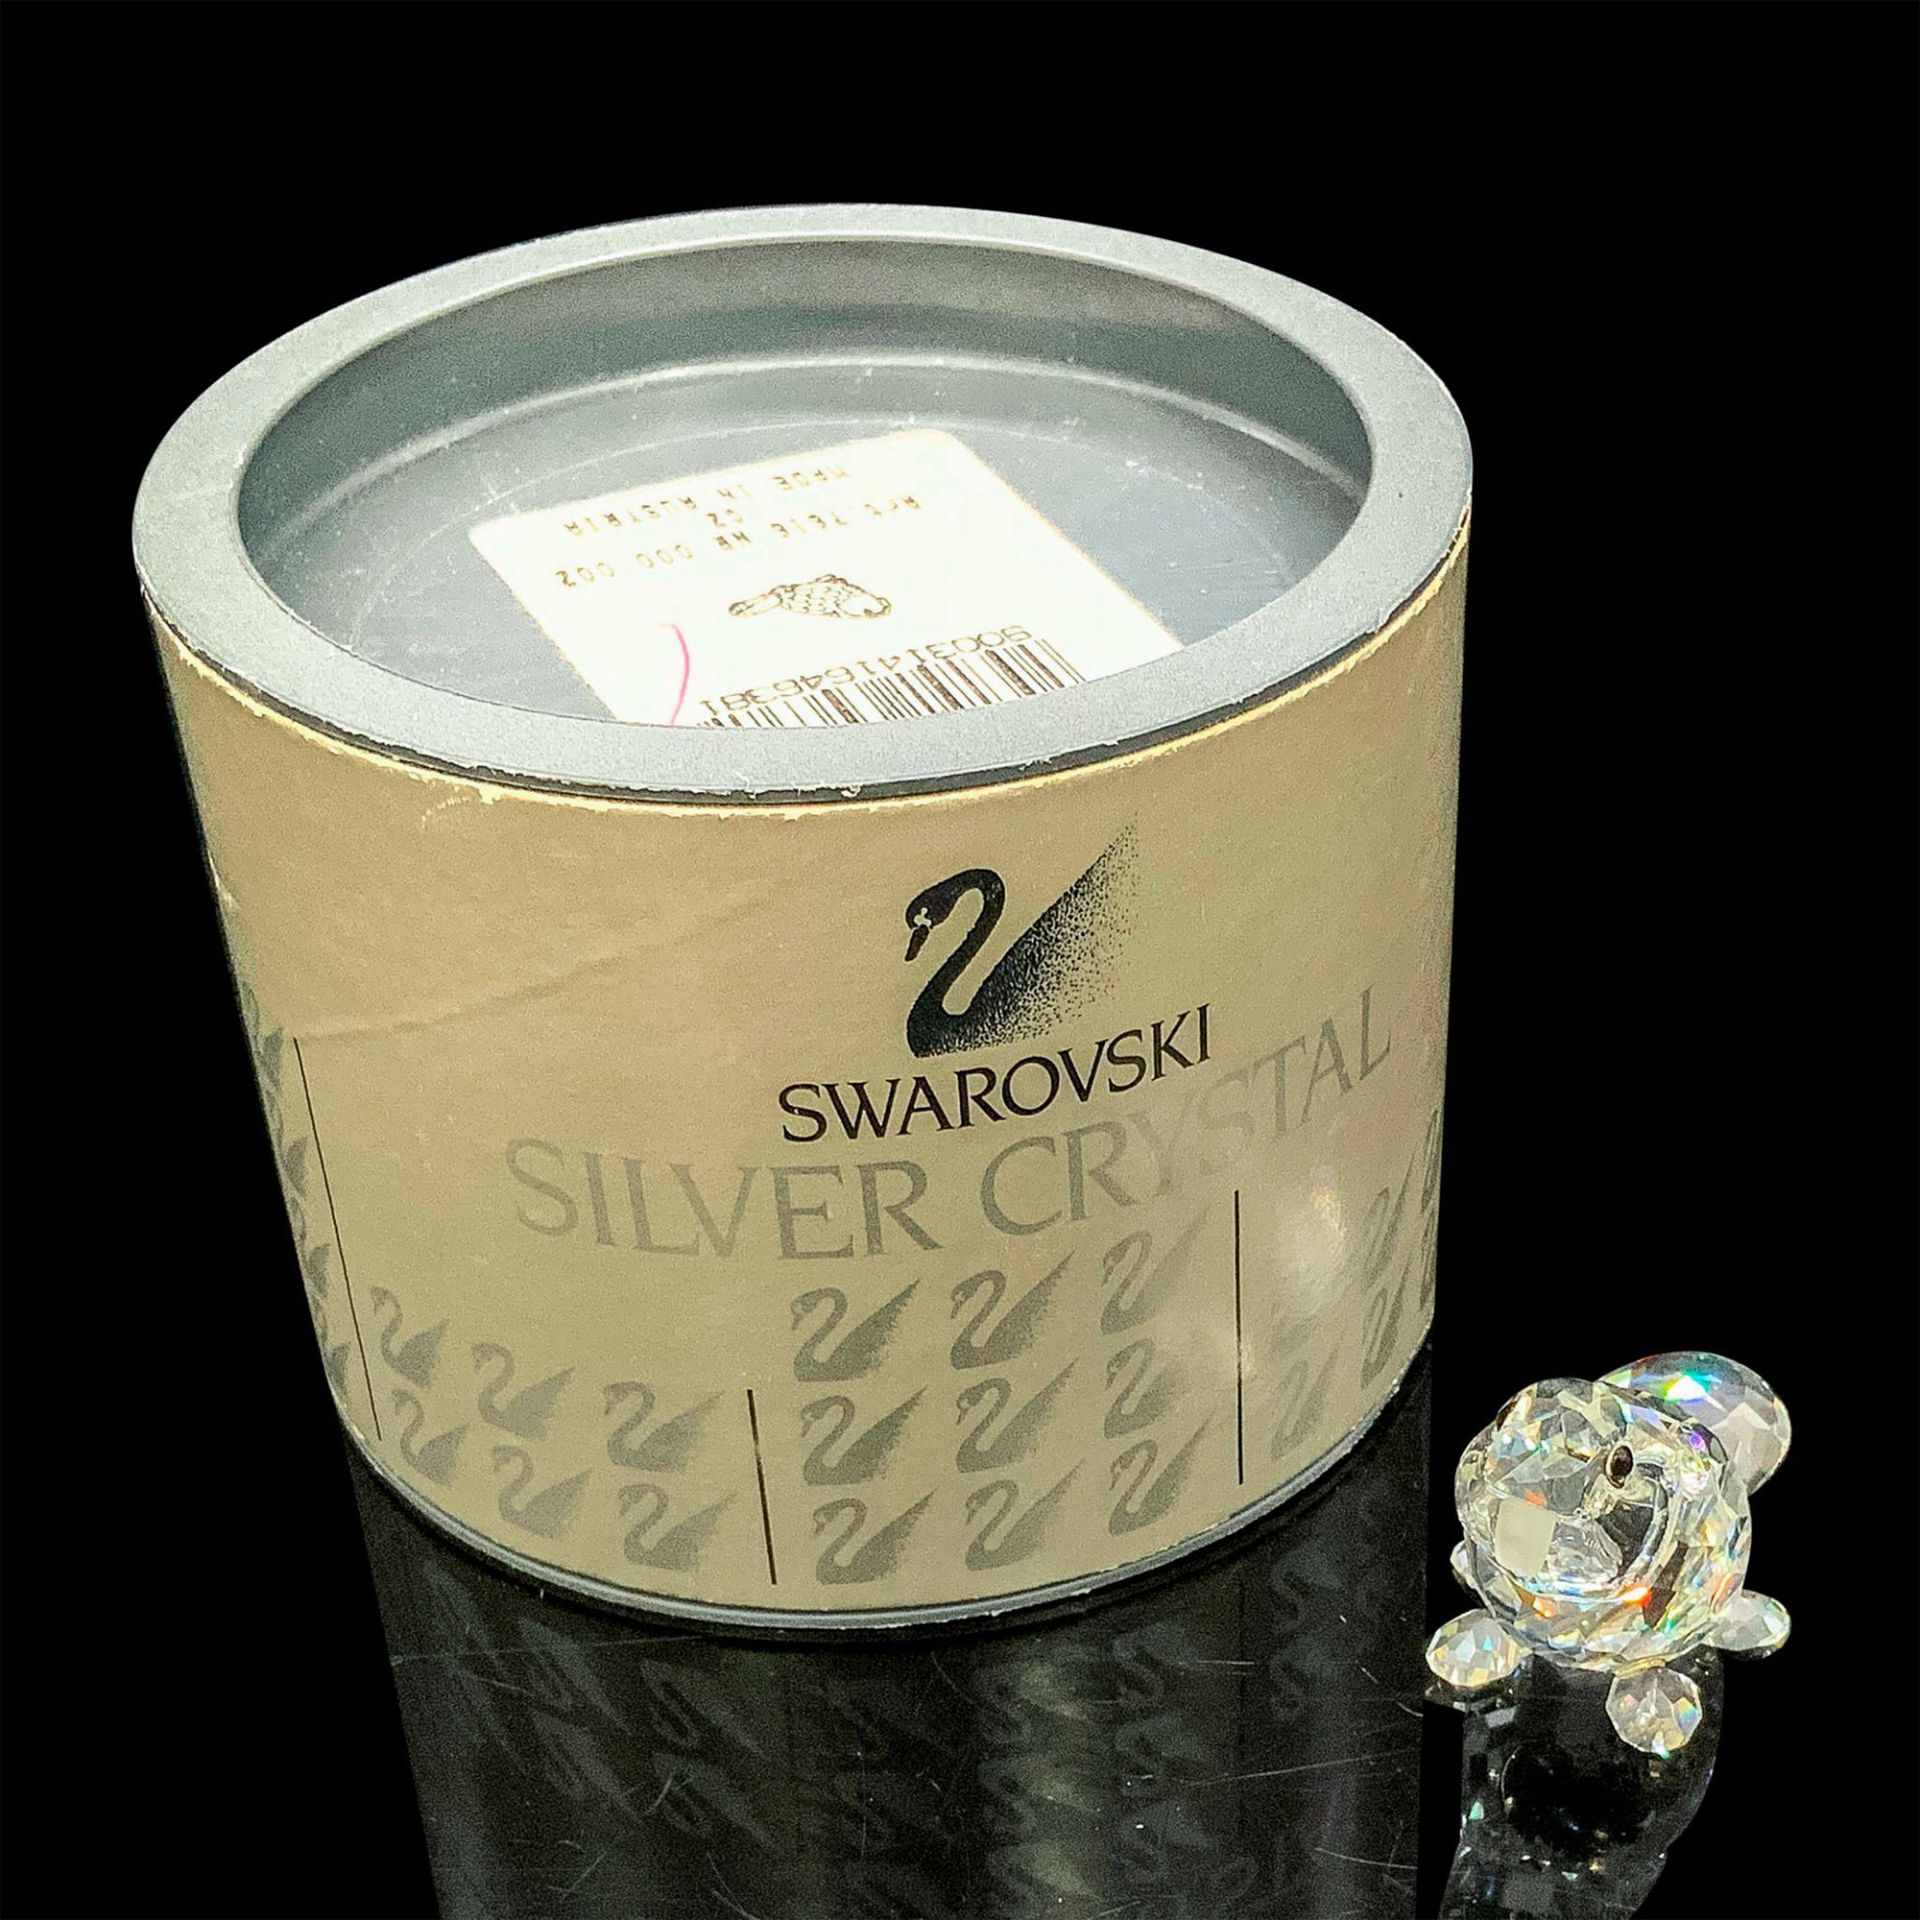 Swarovski Silver Crystal, Biber Baby Sitzend Beaver - Bild 4 aus 4